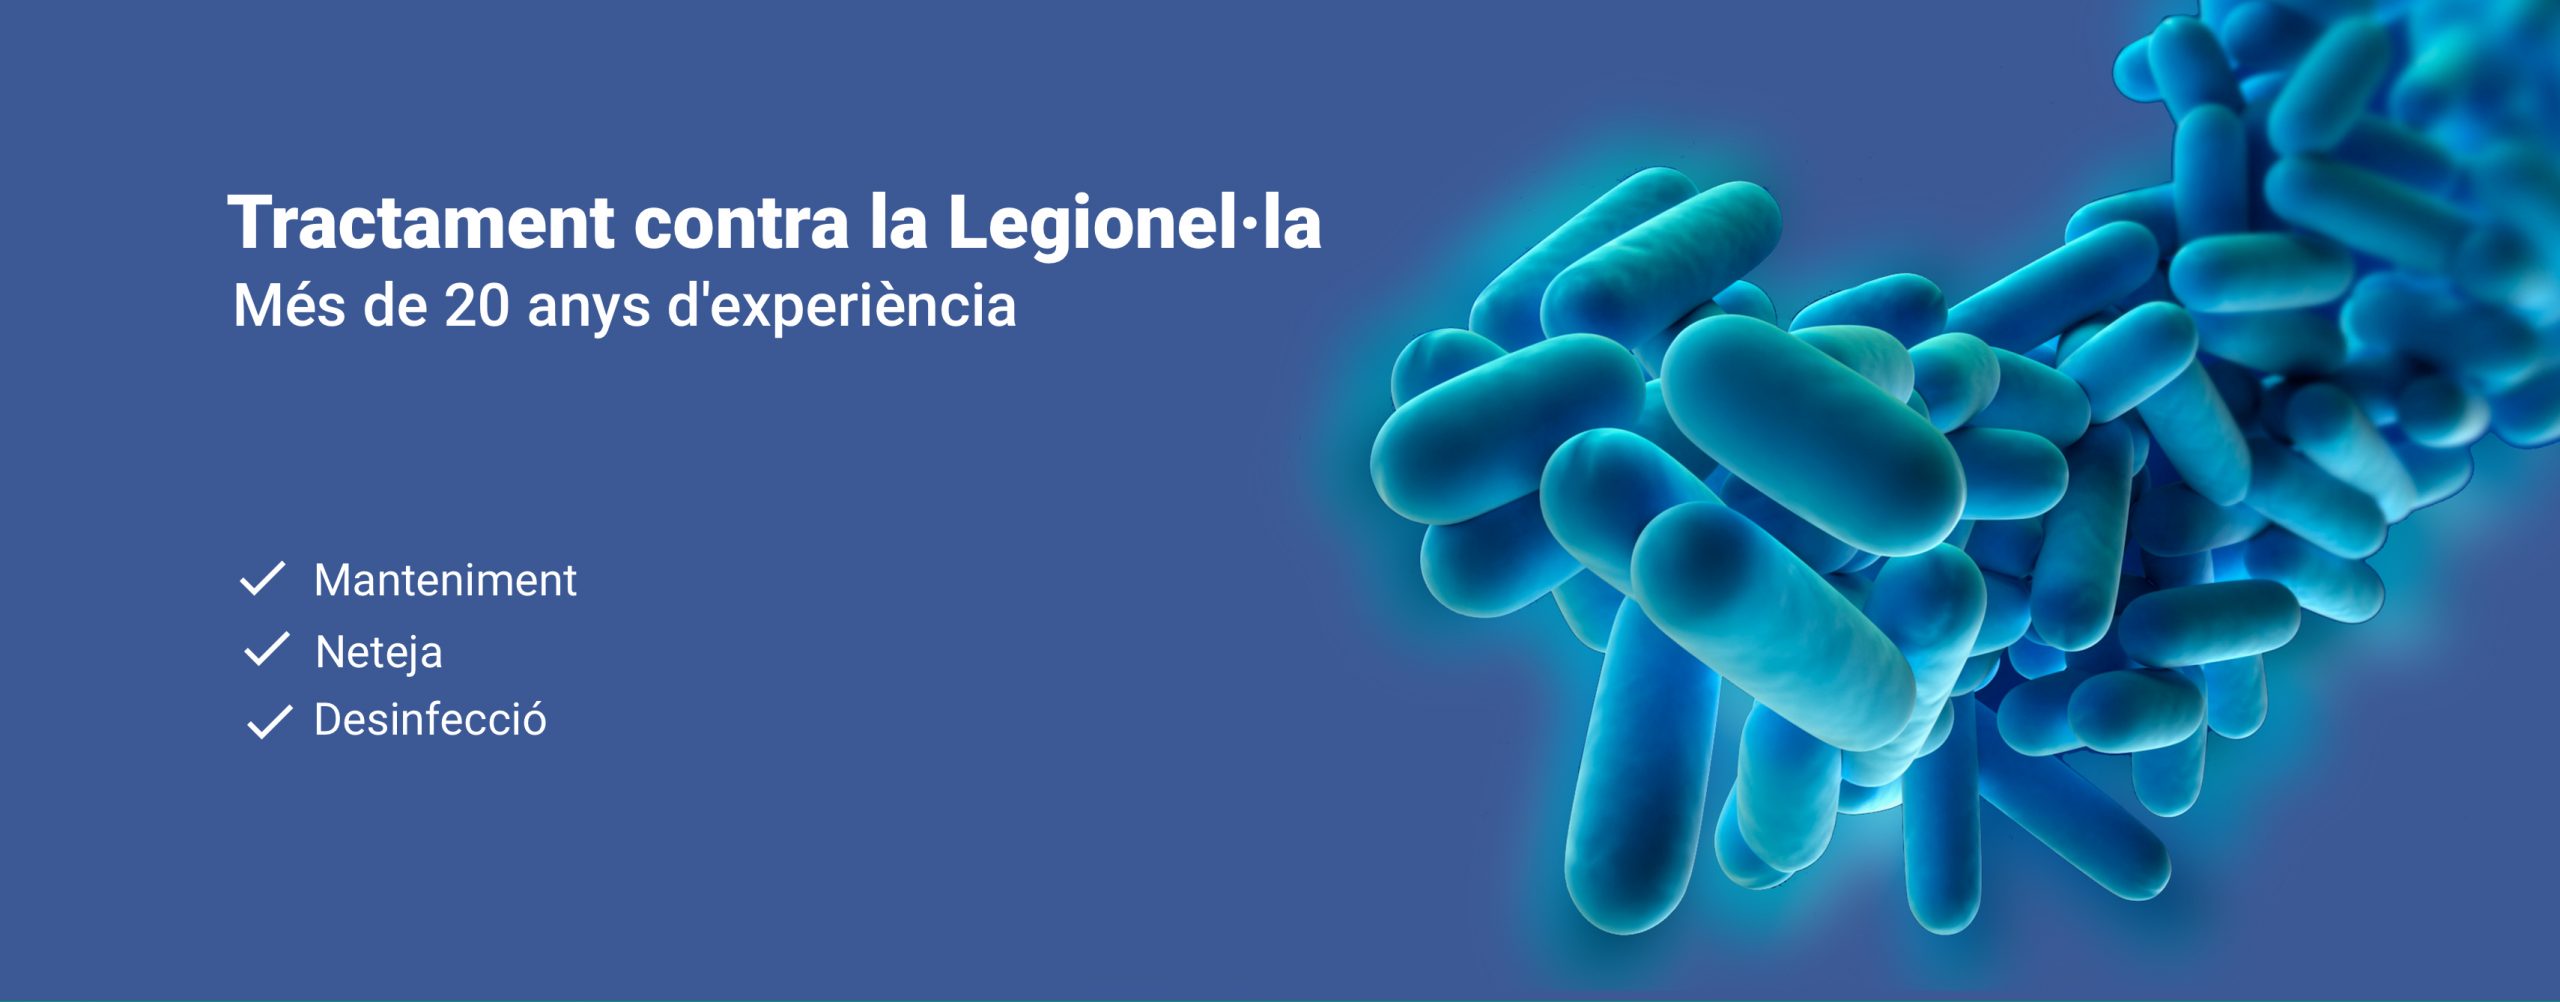 Tractament contra la Legionel·la. Mantenimient, neteja i desinfecció - Pressupost Legionel·la